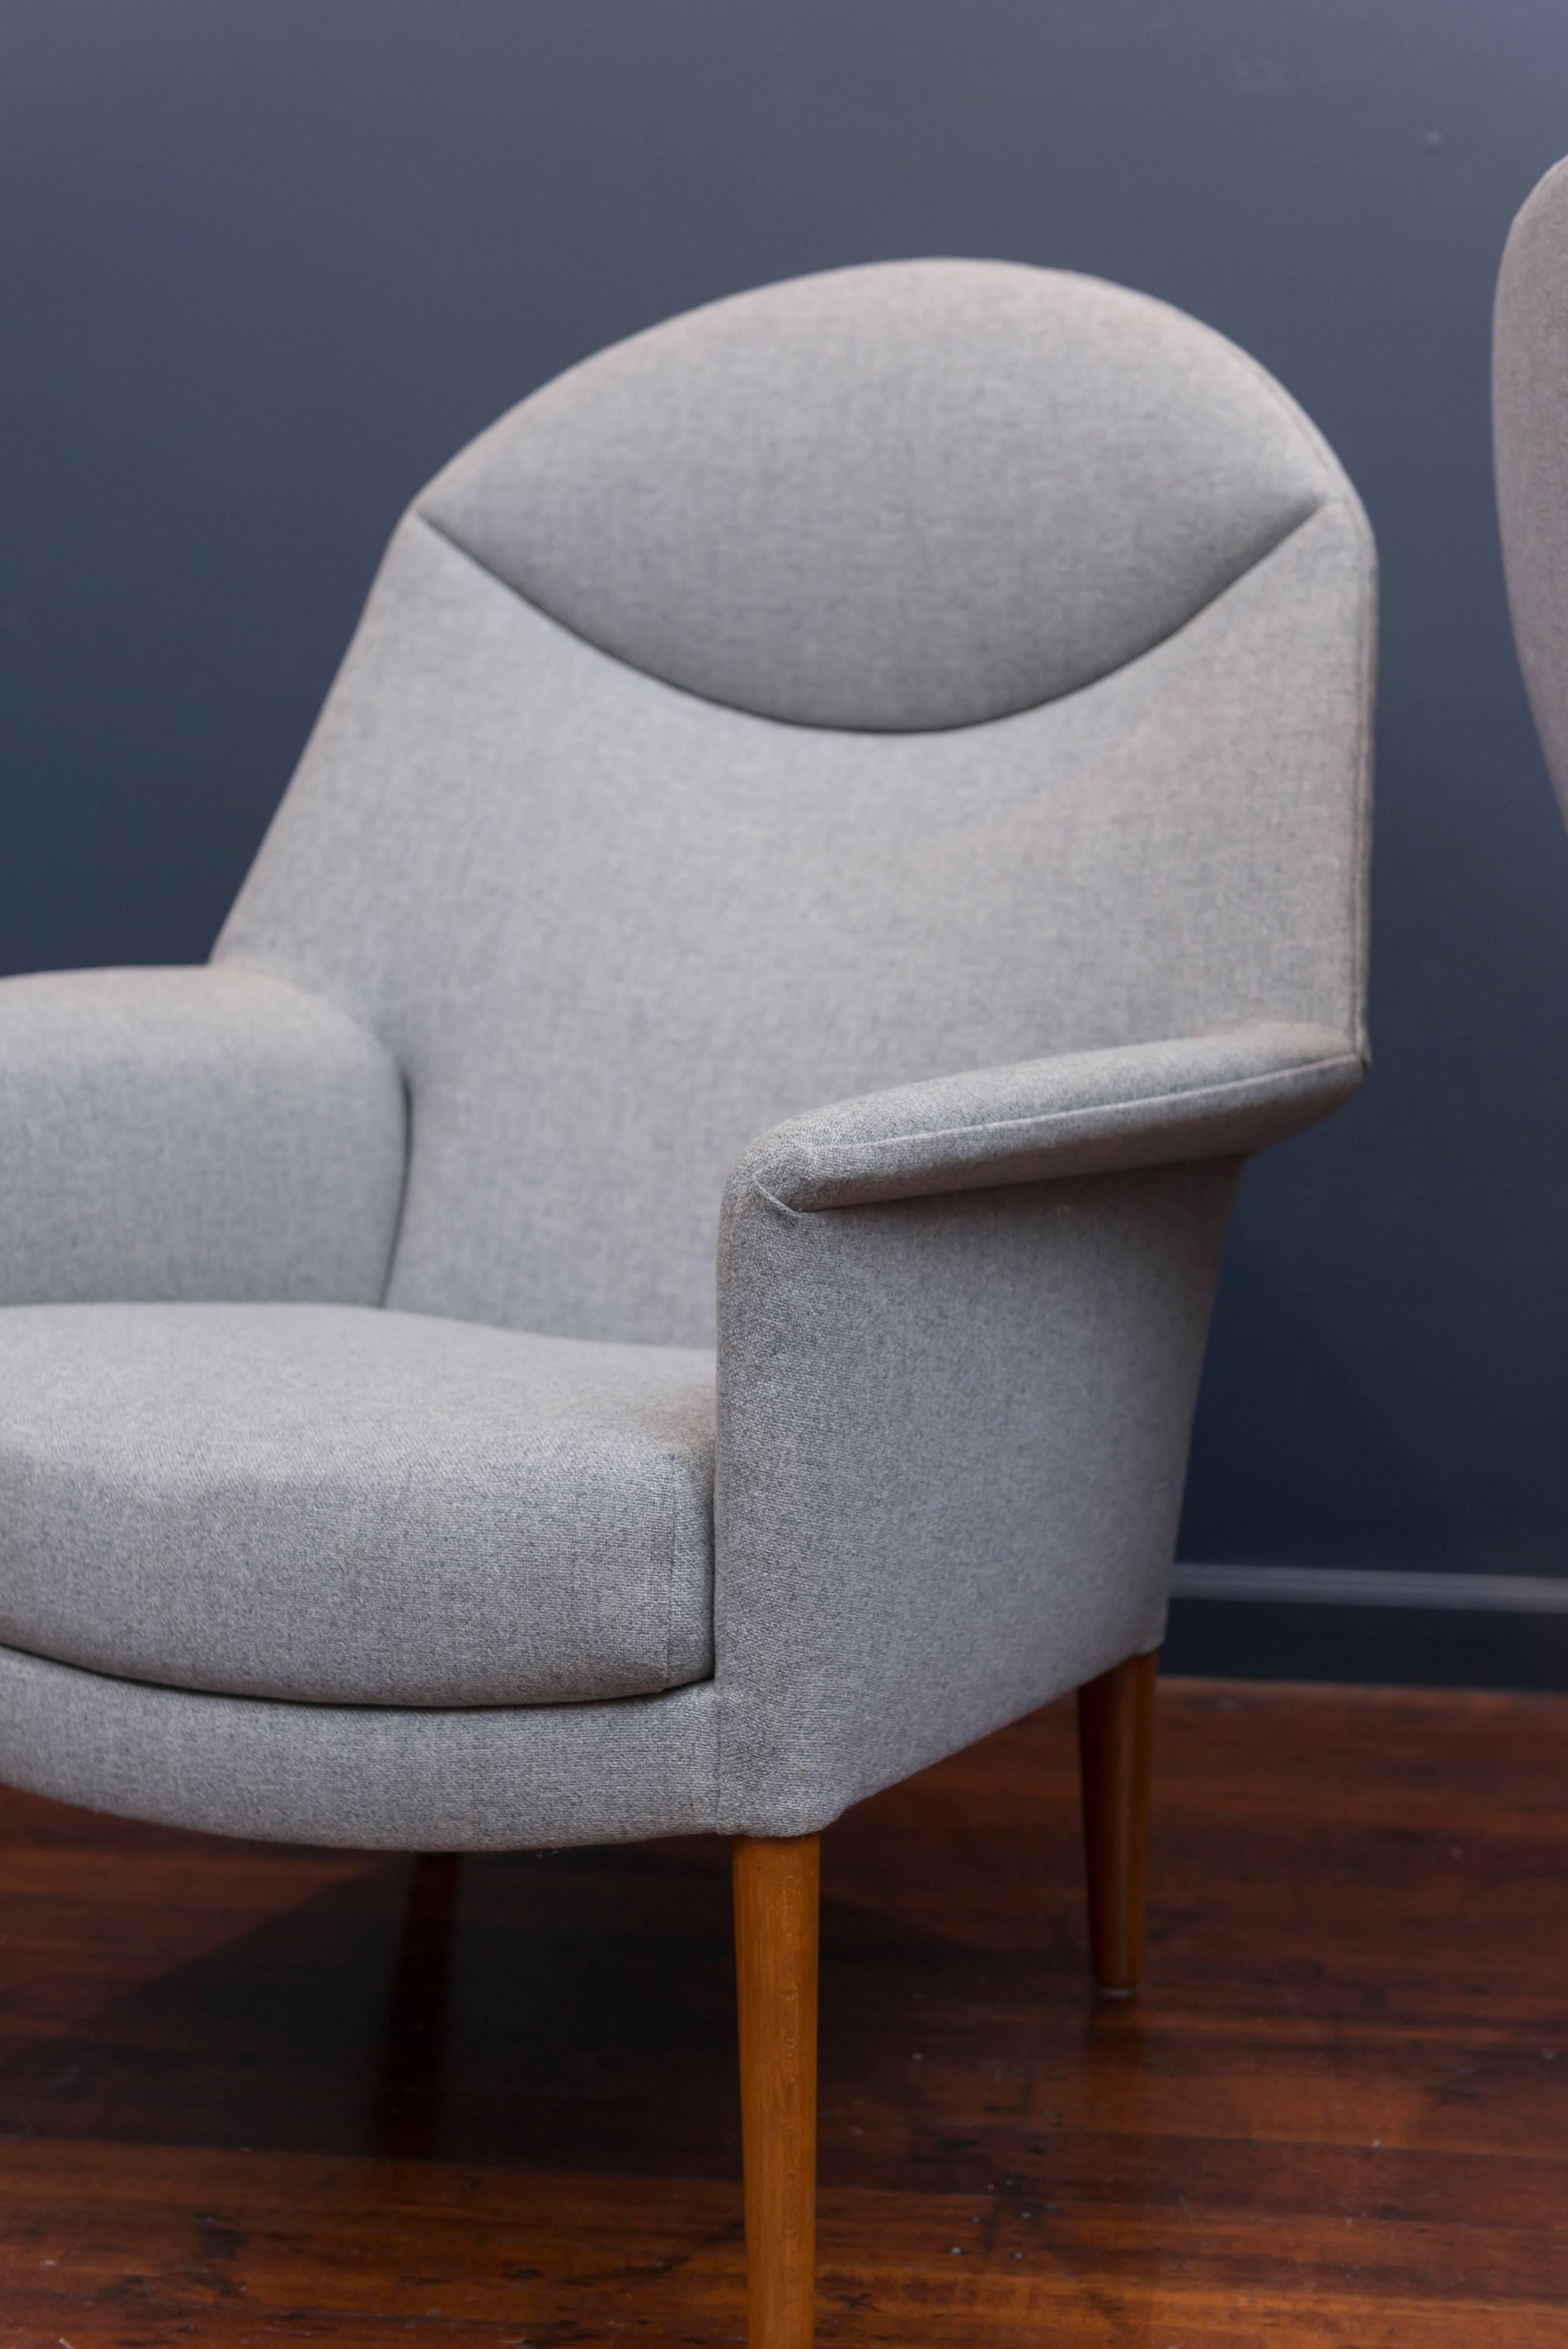 Zwei große, beeindruckende Lounge-Sessel mit hoher Rückenlehne, entworfen von Madsen, Aksel Bender und Ejner Larsen für Willy Beck. Perfekt aufgearbeitetes Teakholz und neu gepolstert mit dänischer Wolle. Sie sind einzeln mit der Herstellermarke,